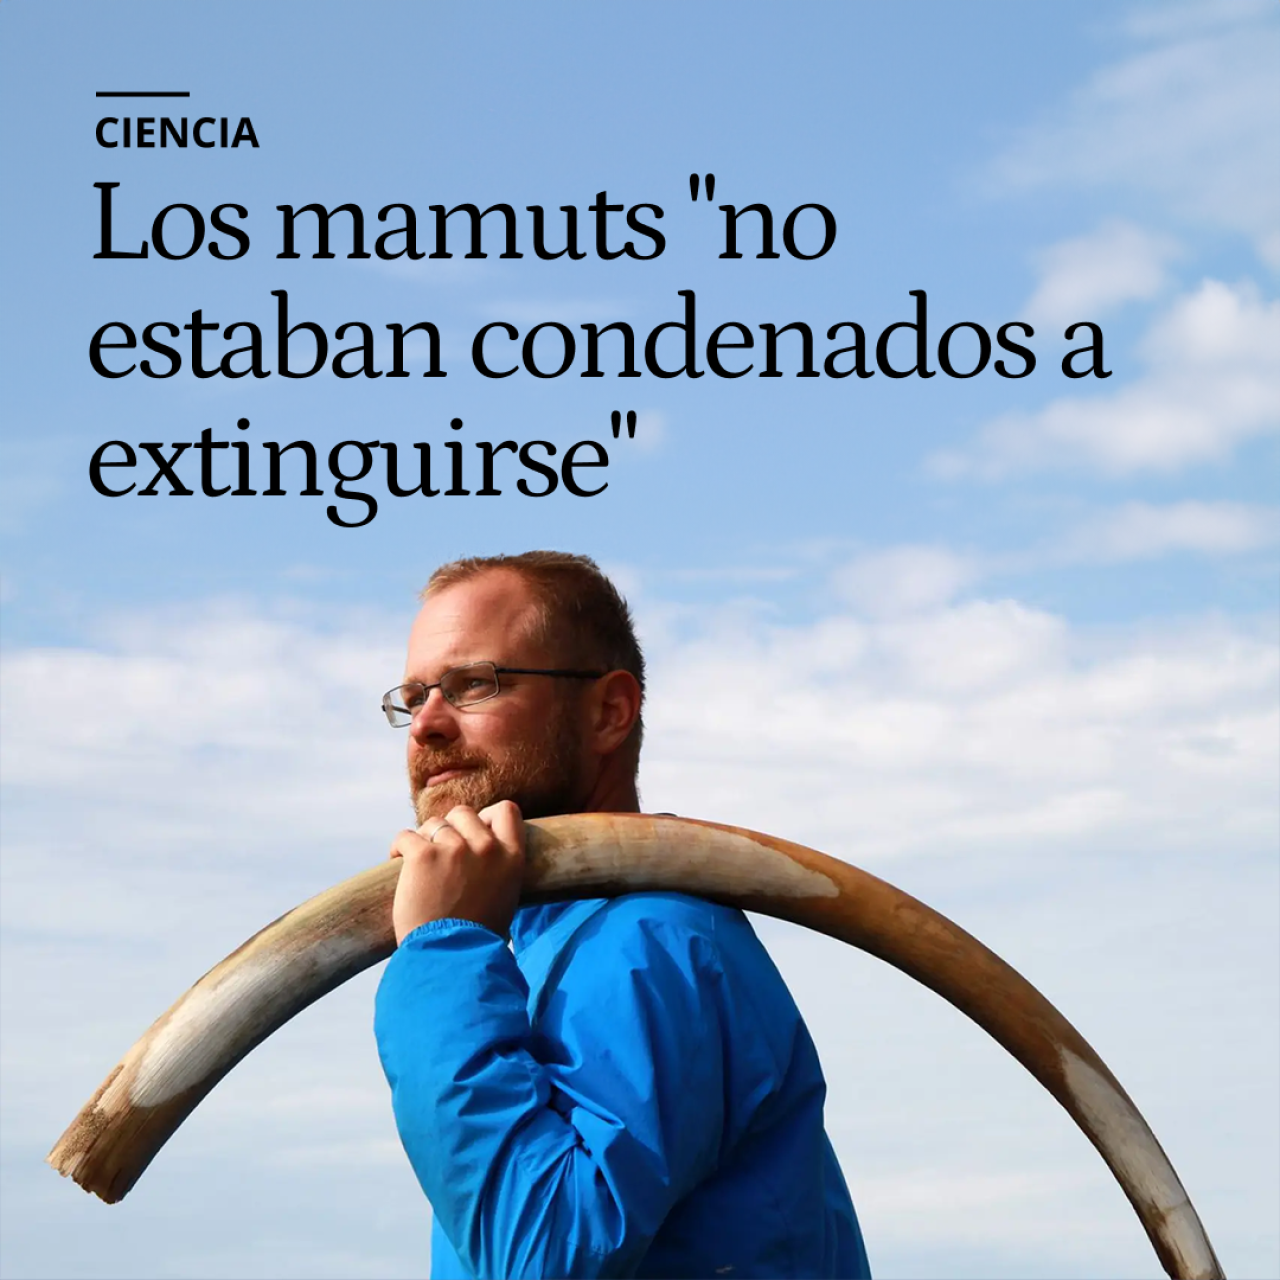 "No estaban condenados a extinguirse": reconstruyen genéticamente los últimos días de los mamuts